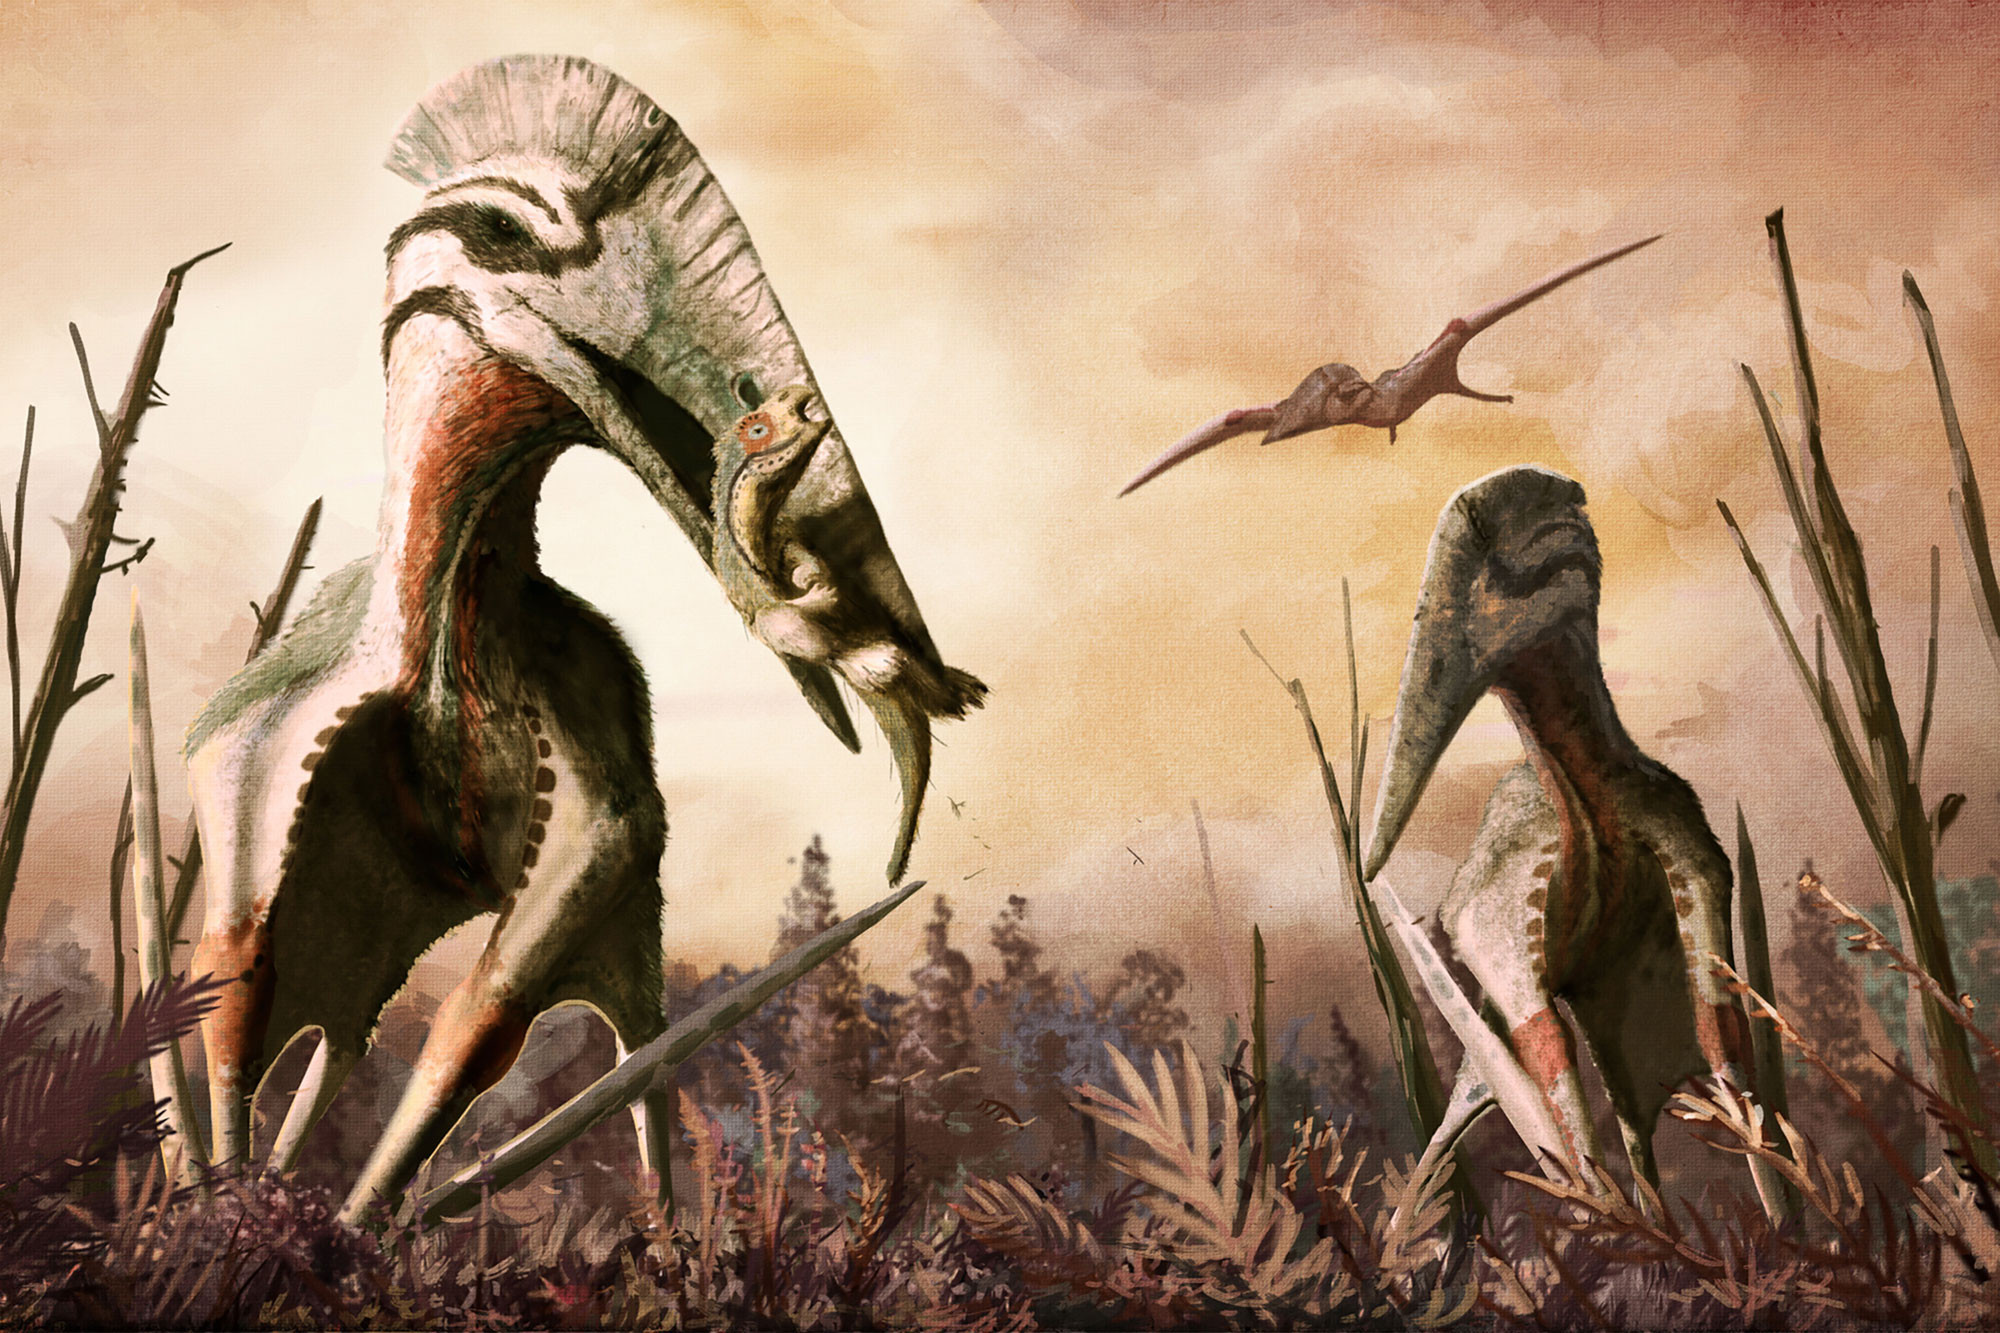 Динозавры это ящеры. Хацегоптерикс Планета динозавров. Гатцегоптерикс Птерозавр. Кетцалькоатль динозавр. Арамбургиана Птерозавр.